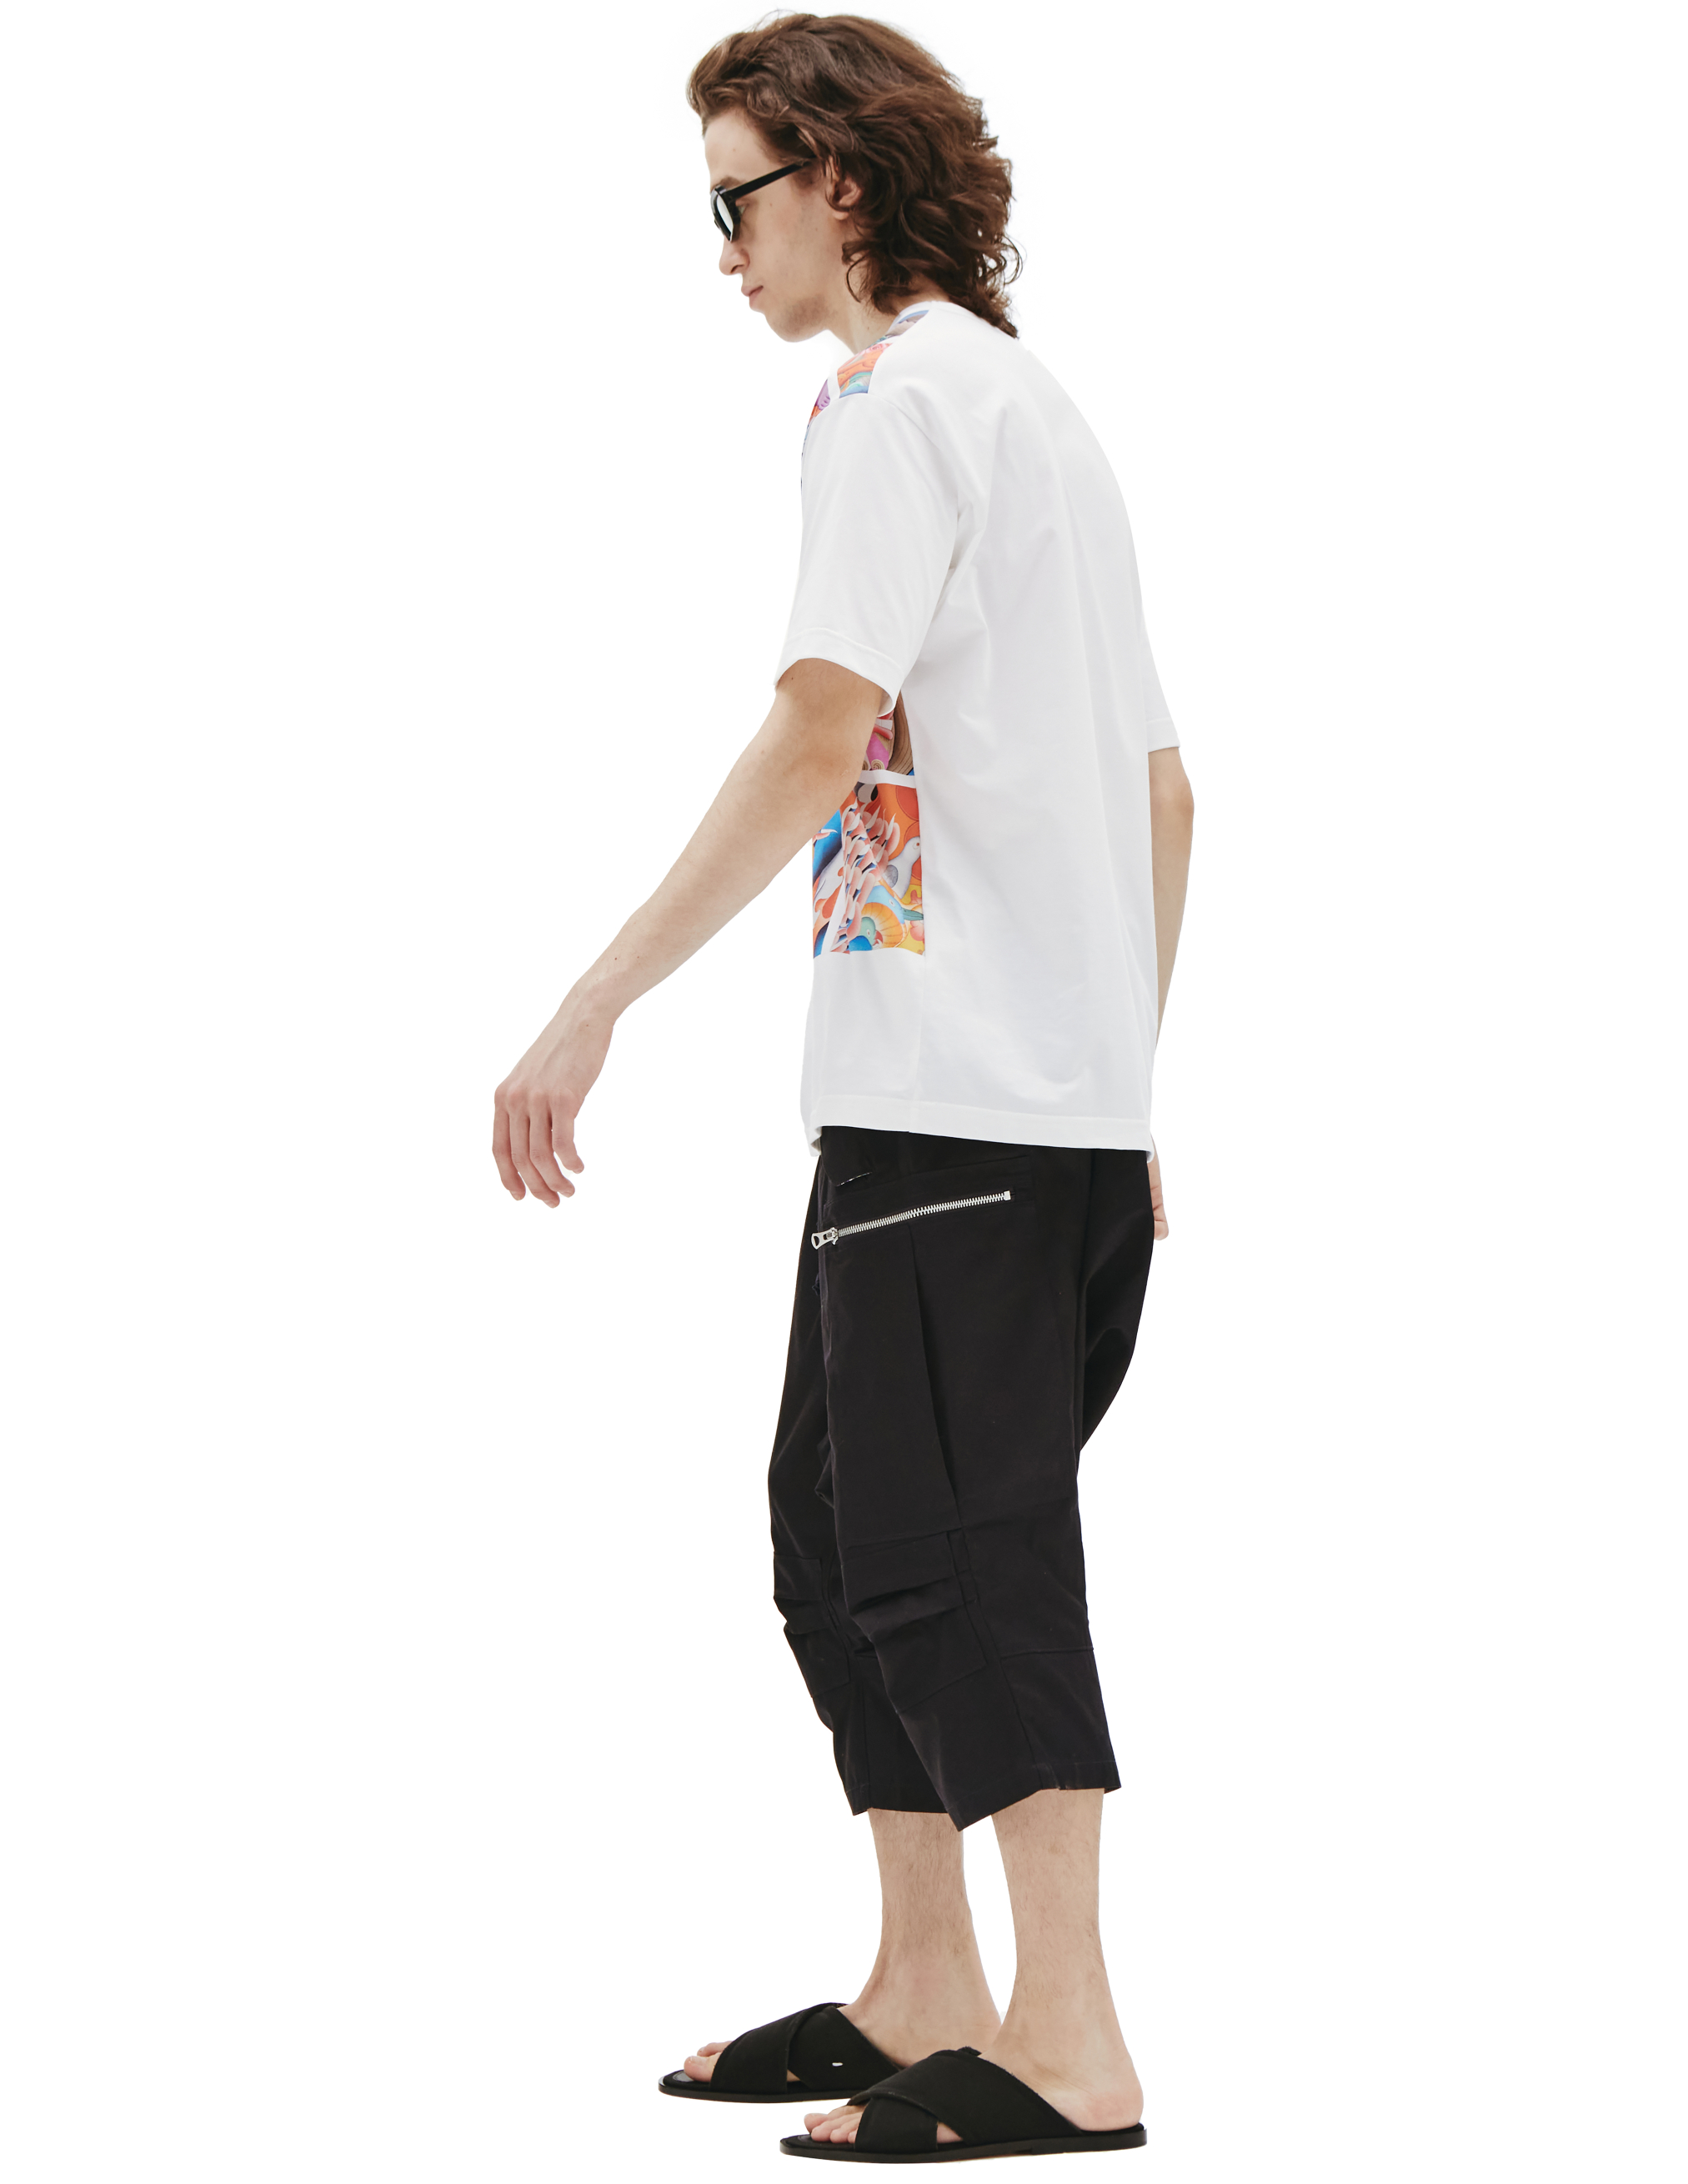 Хлопковая футболка с восточным принтом - Junya Watanabe WI-T004-051-1 Фото 2